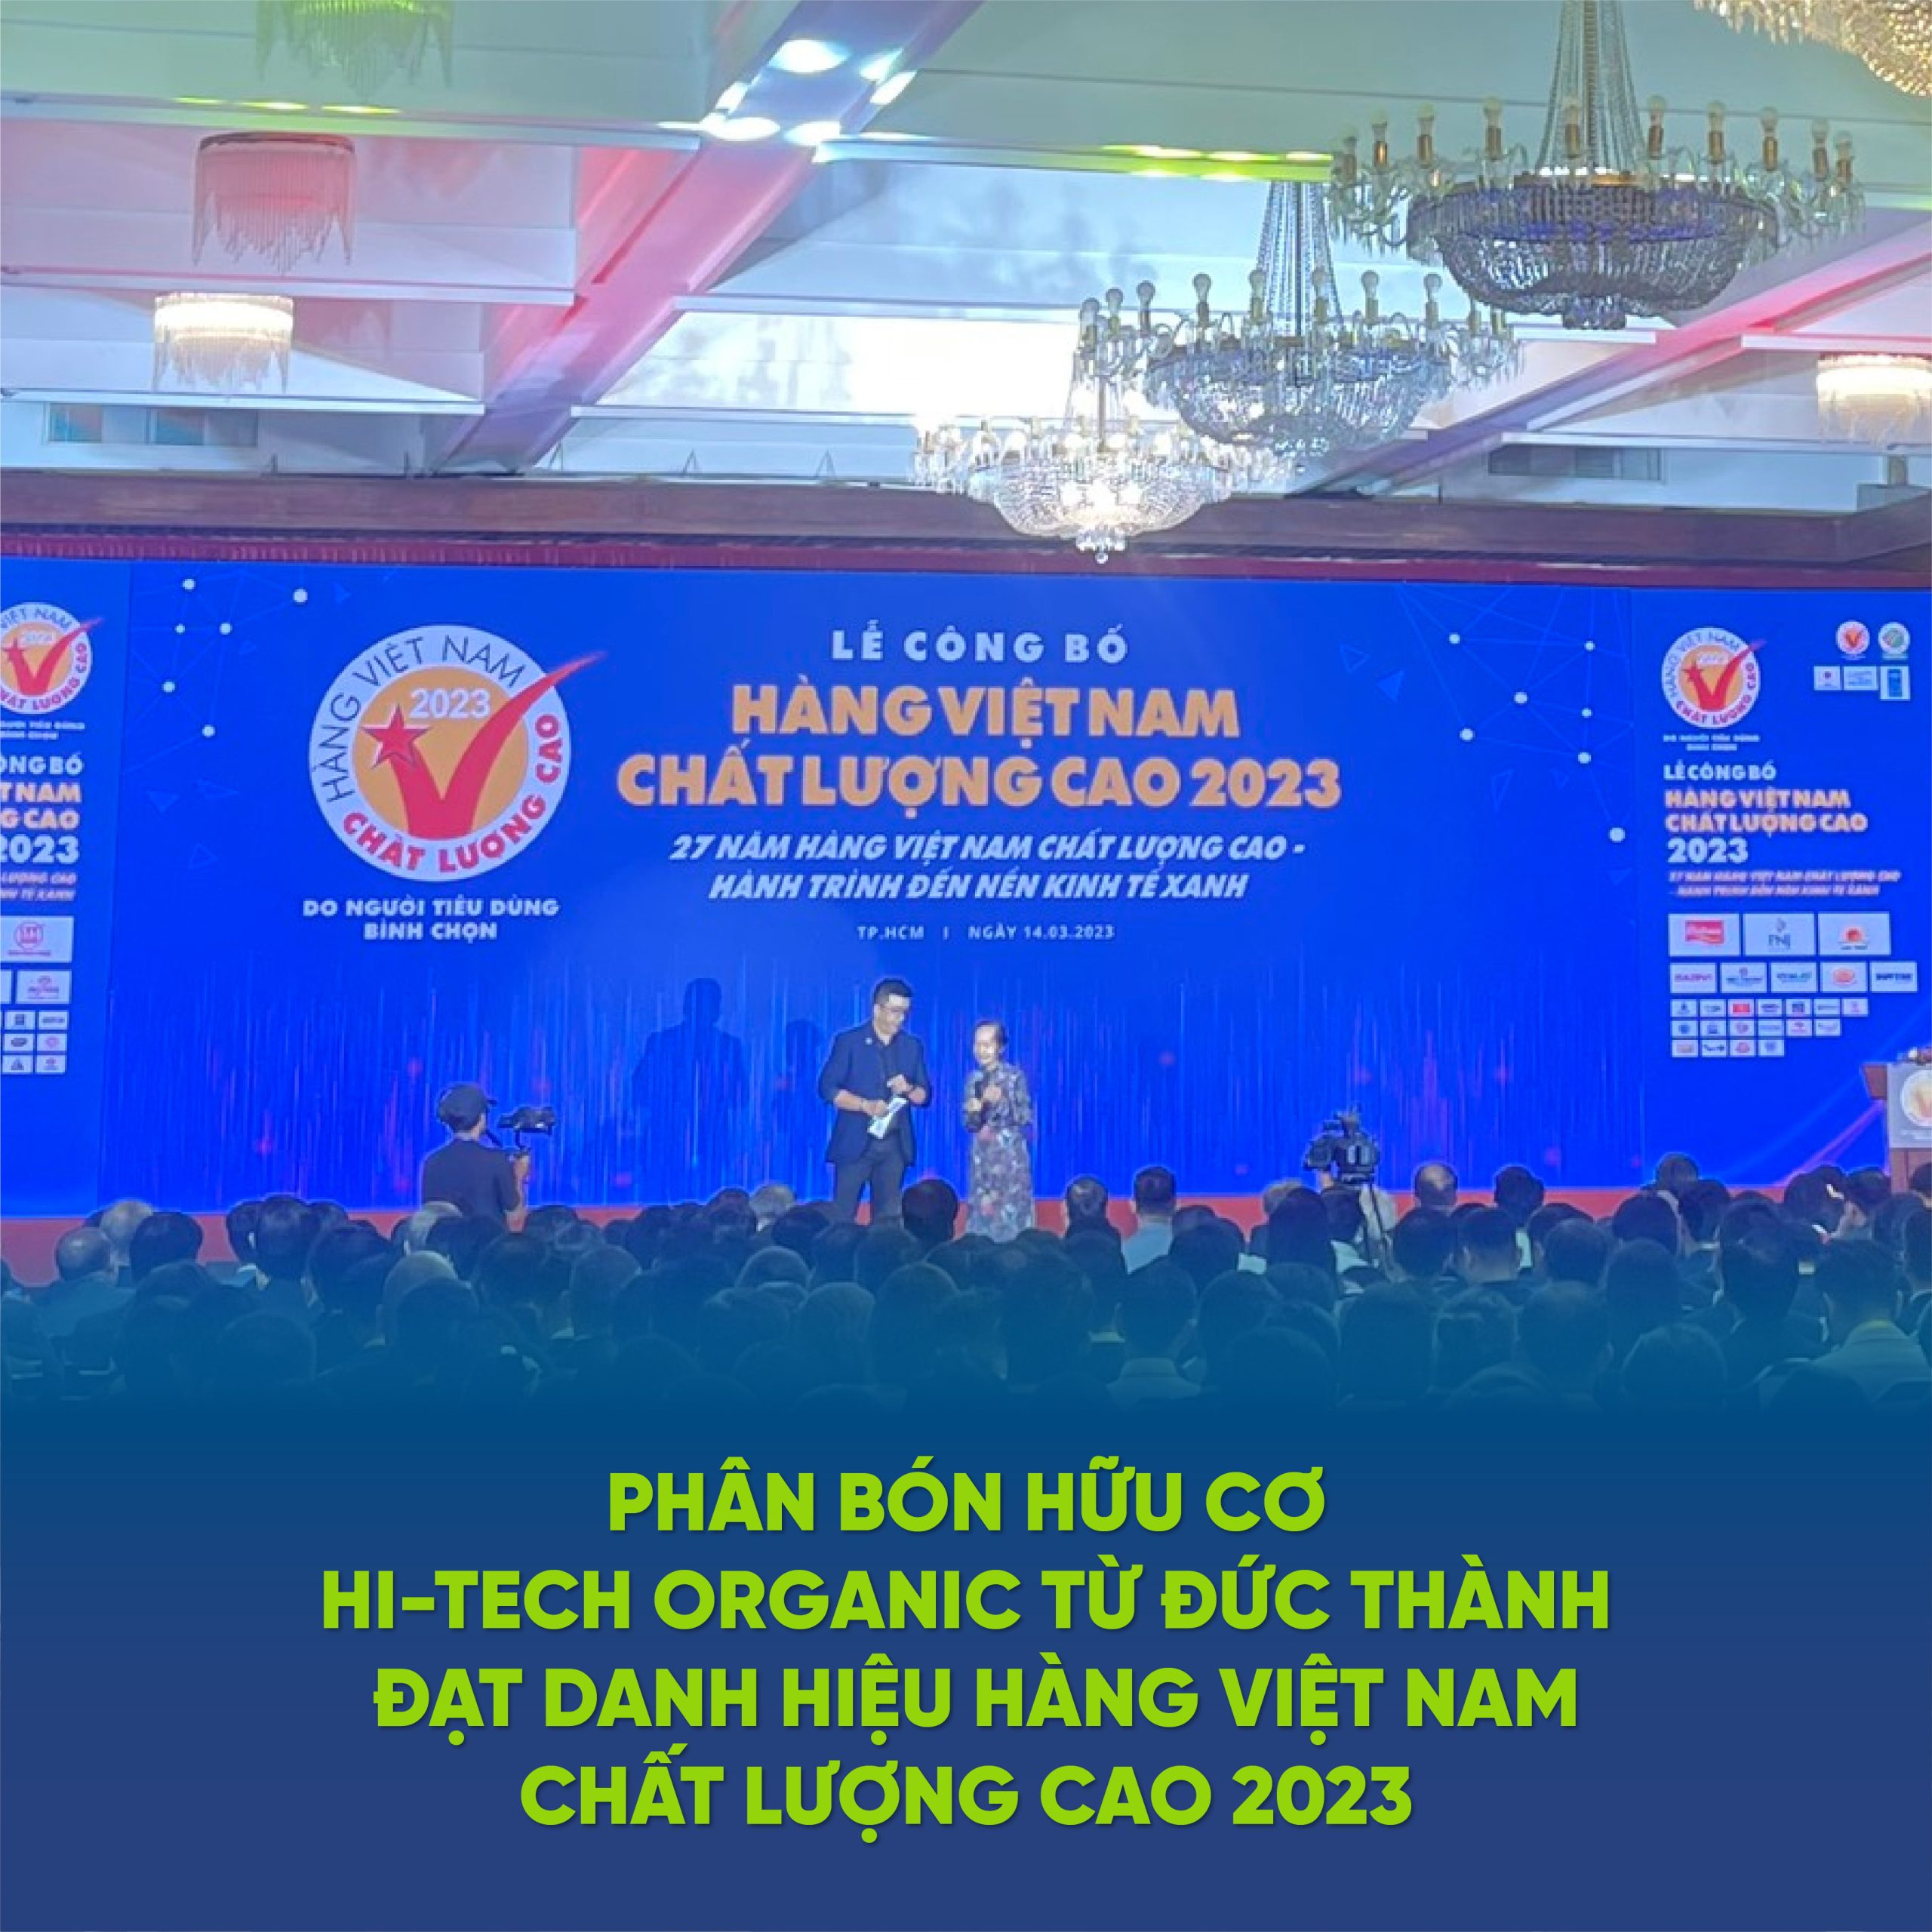 Công ty phân bón hữu cơ Hitech Organic xuất sắc đạt chứng nhận Hàng Việt Nam chất lượng cao 2023